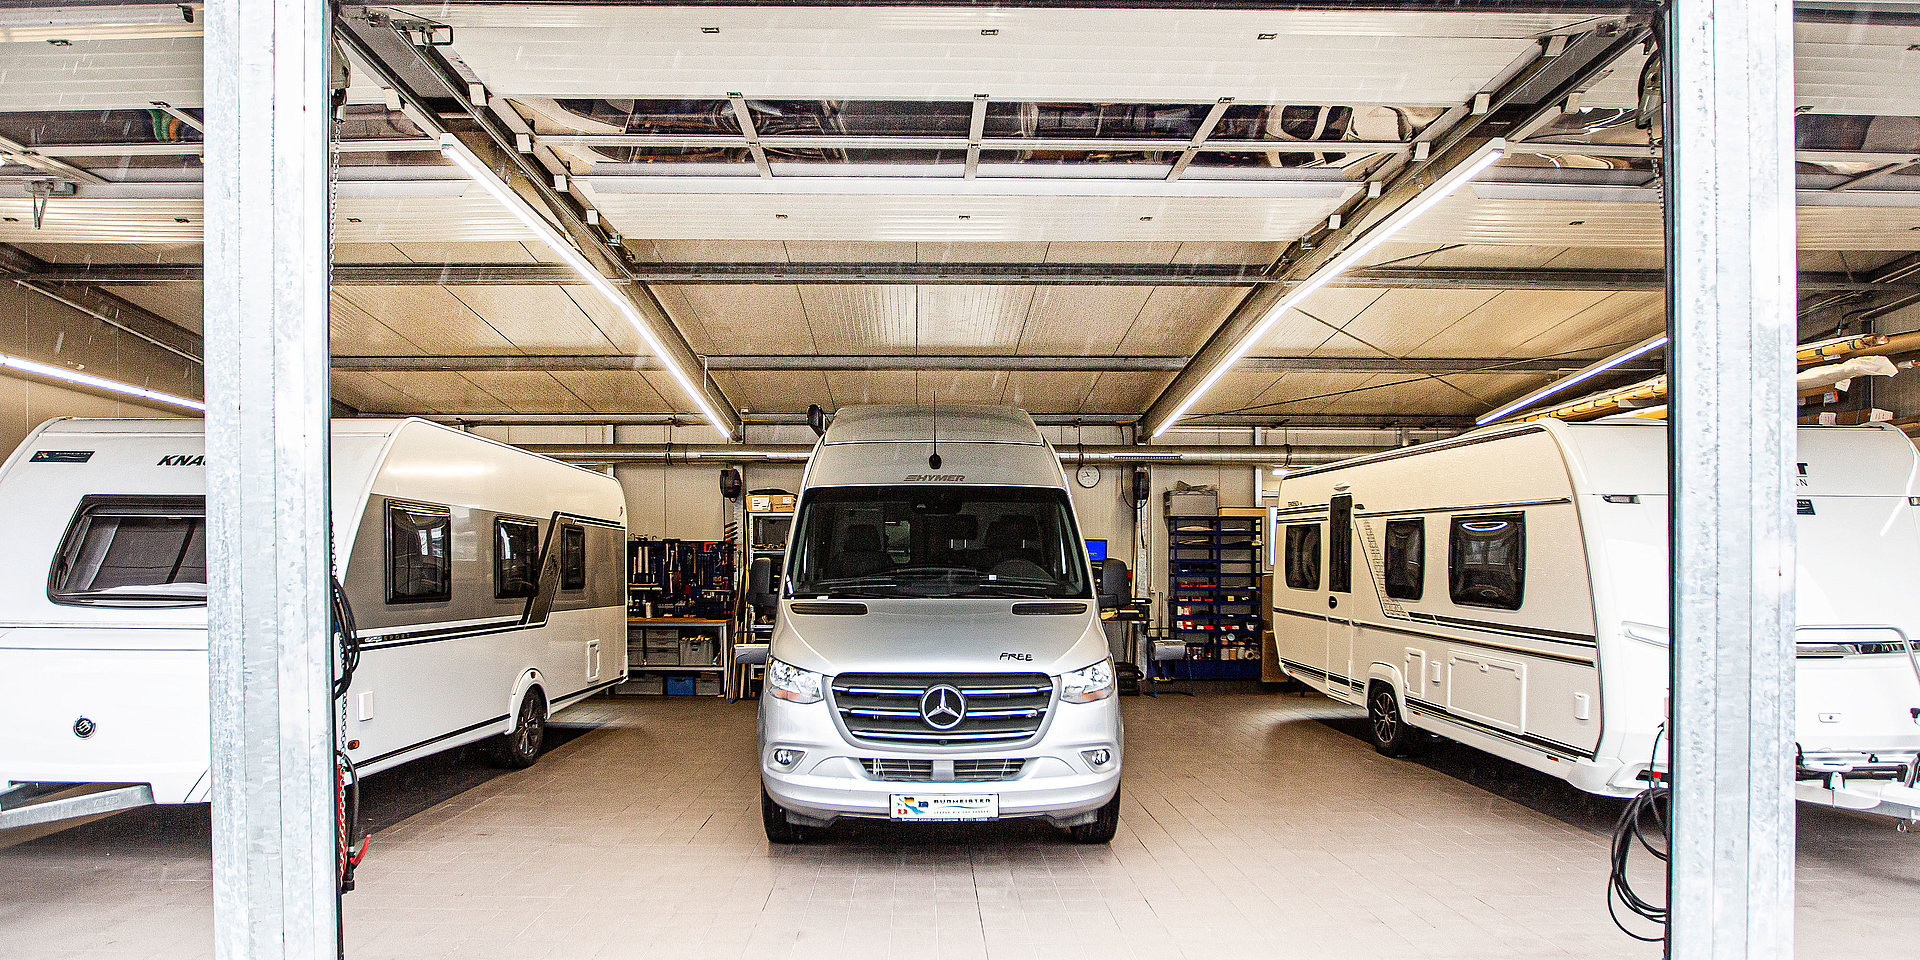 Werkstatt-Service im Burmeister Caravan Center am Bodensee